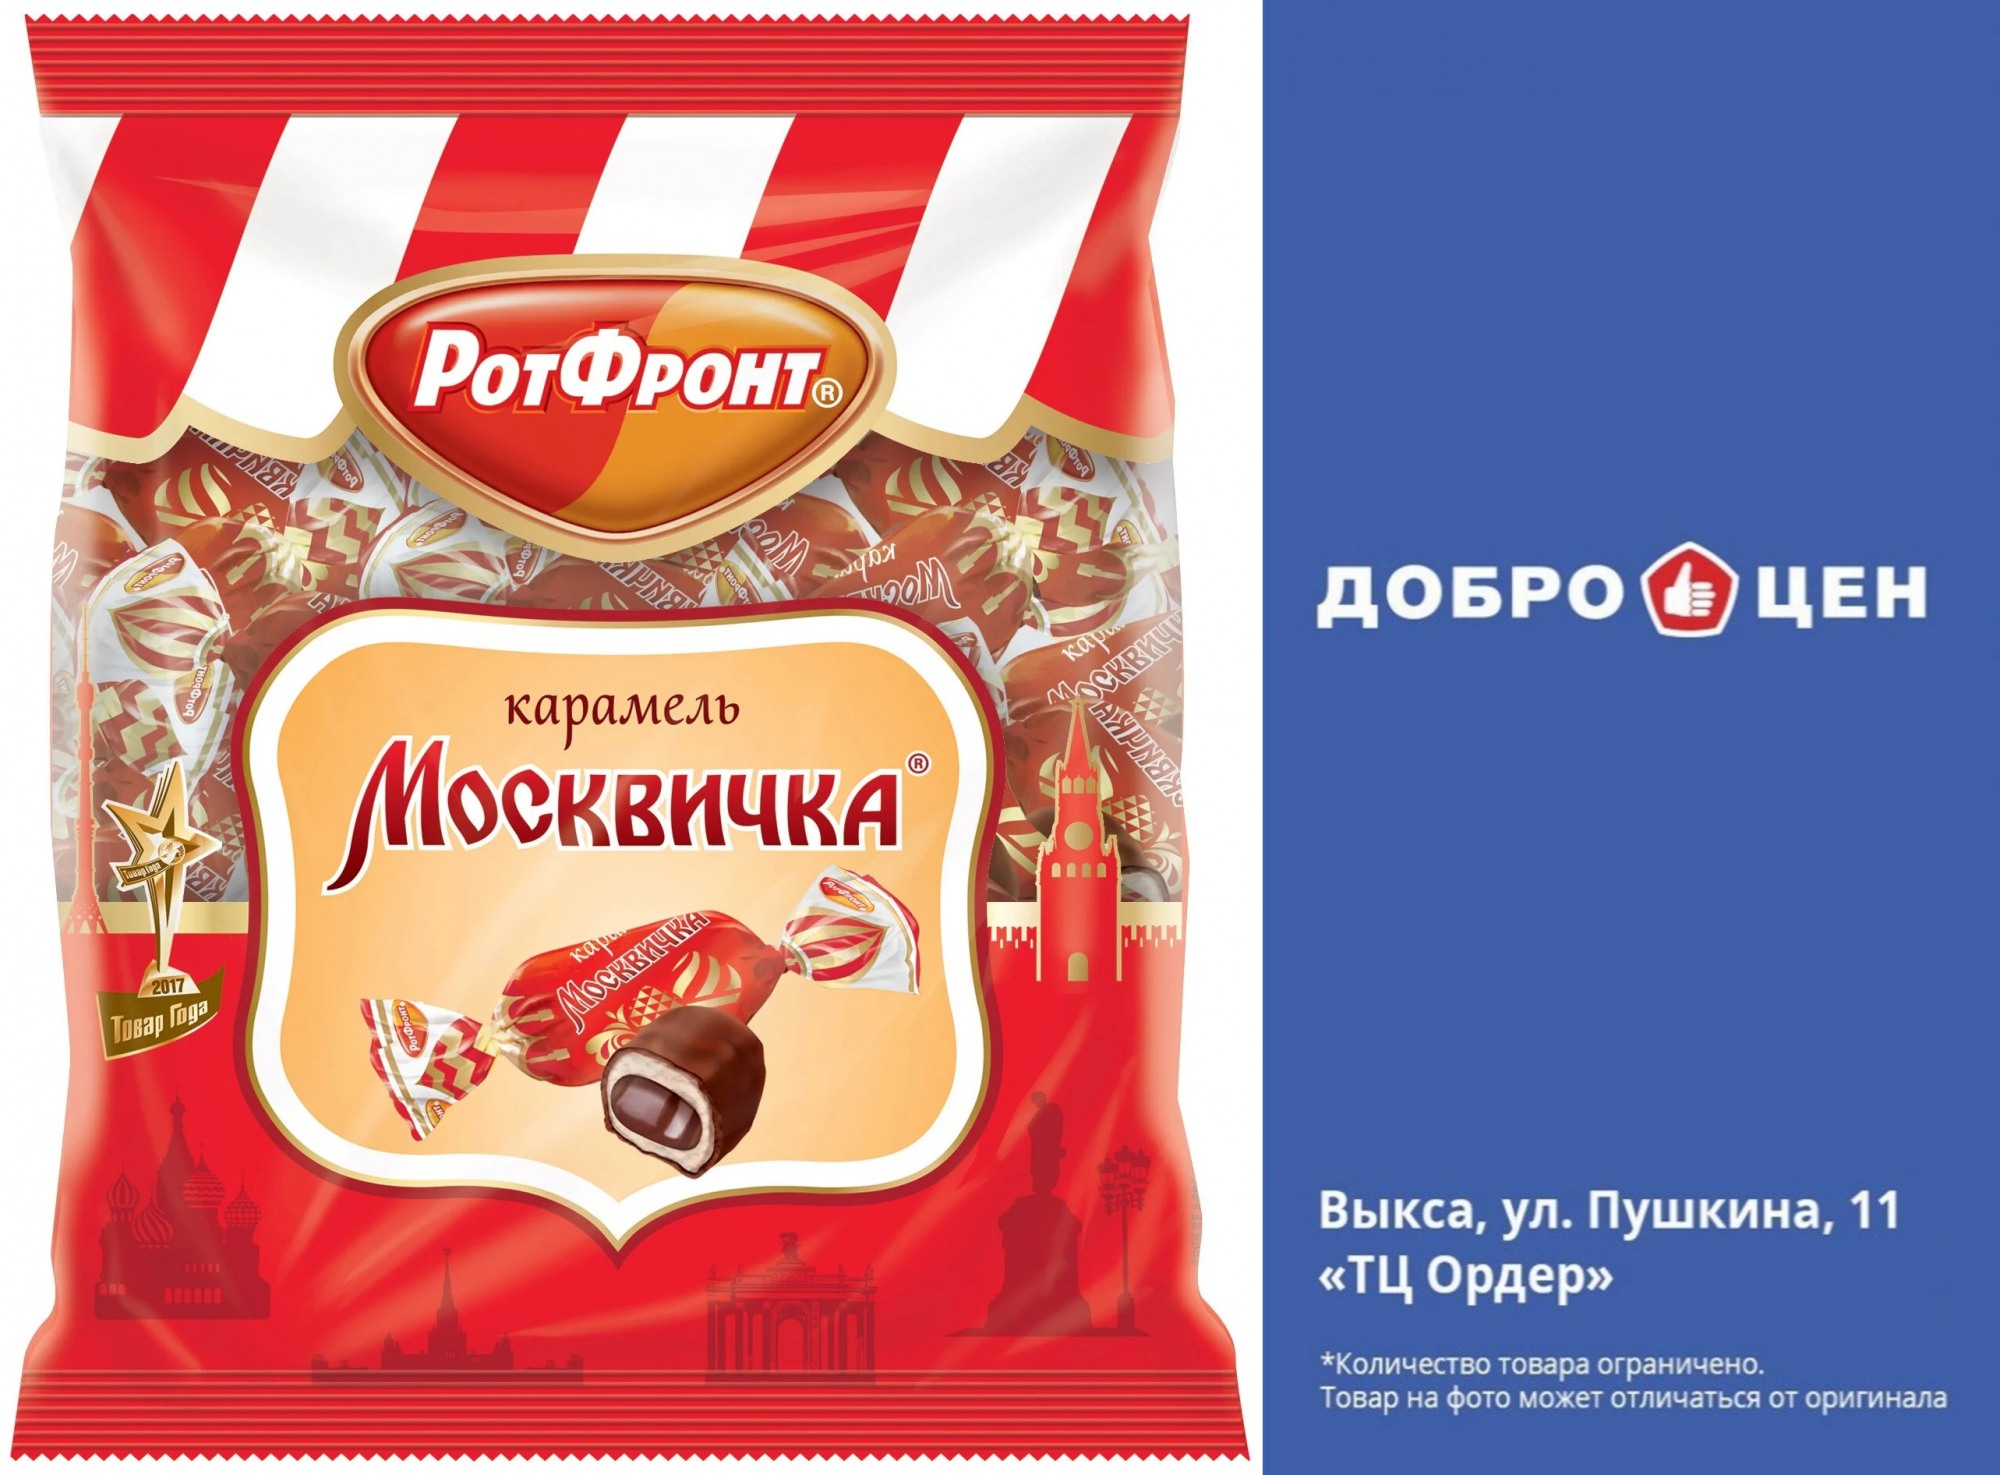 Покупайте конфеты «Москвичка» в магазине «Доброцен»